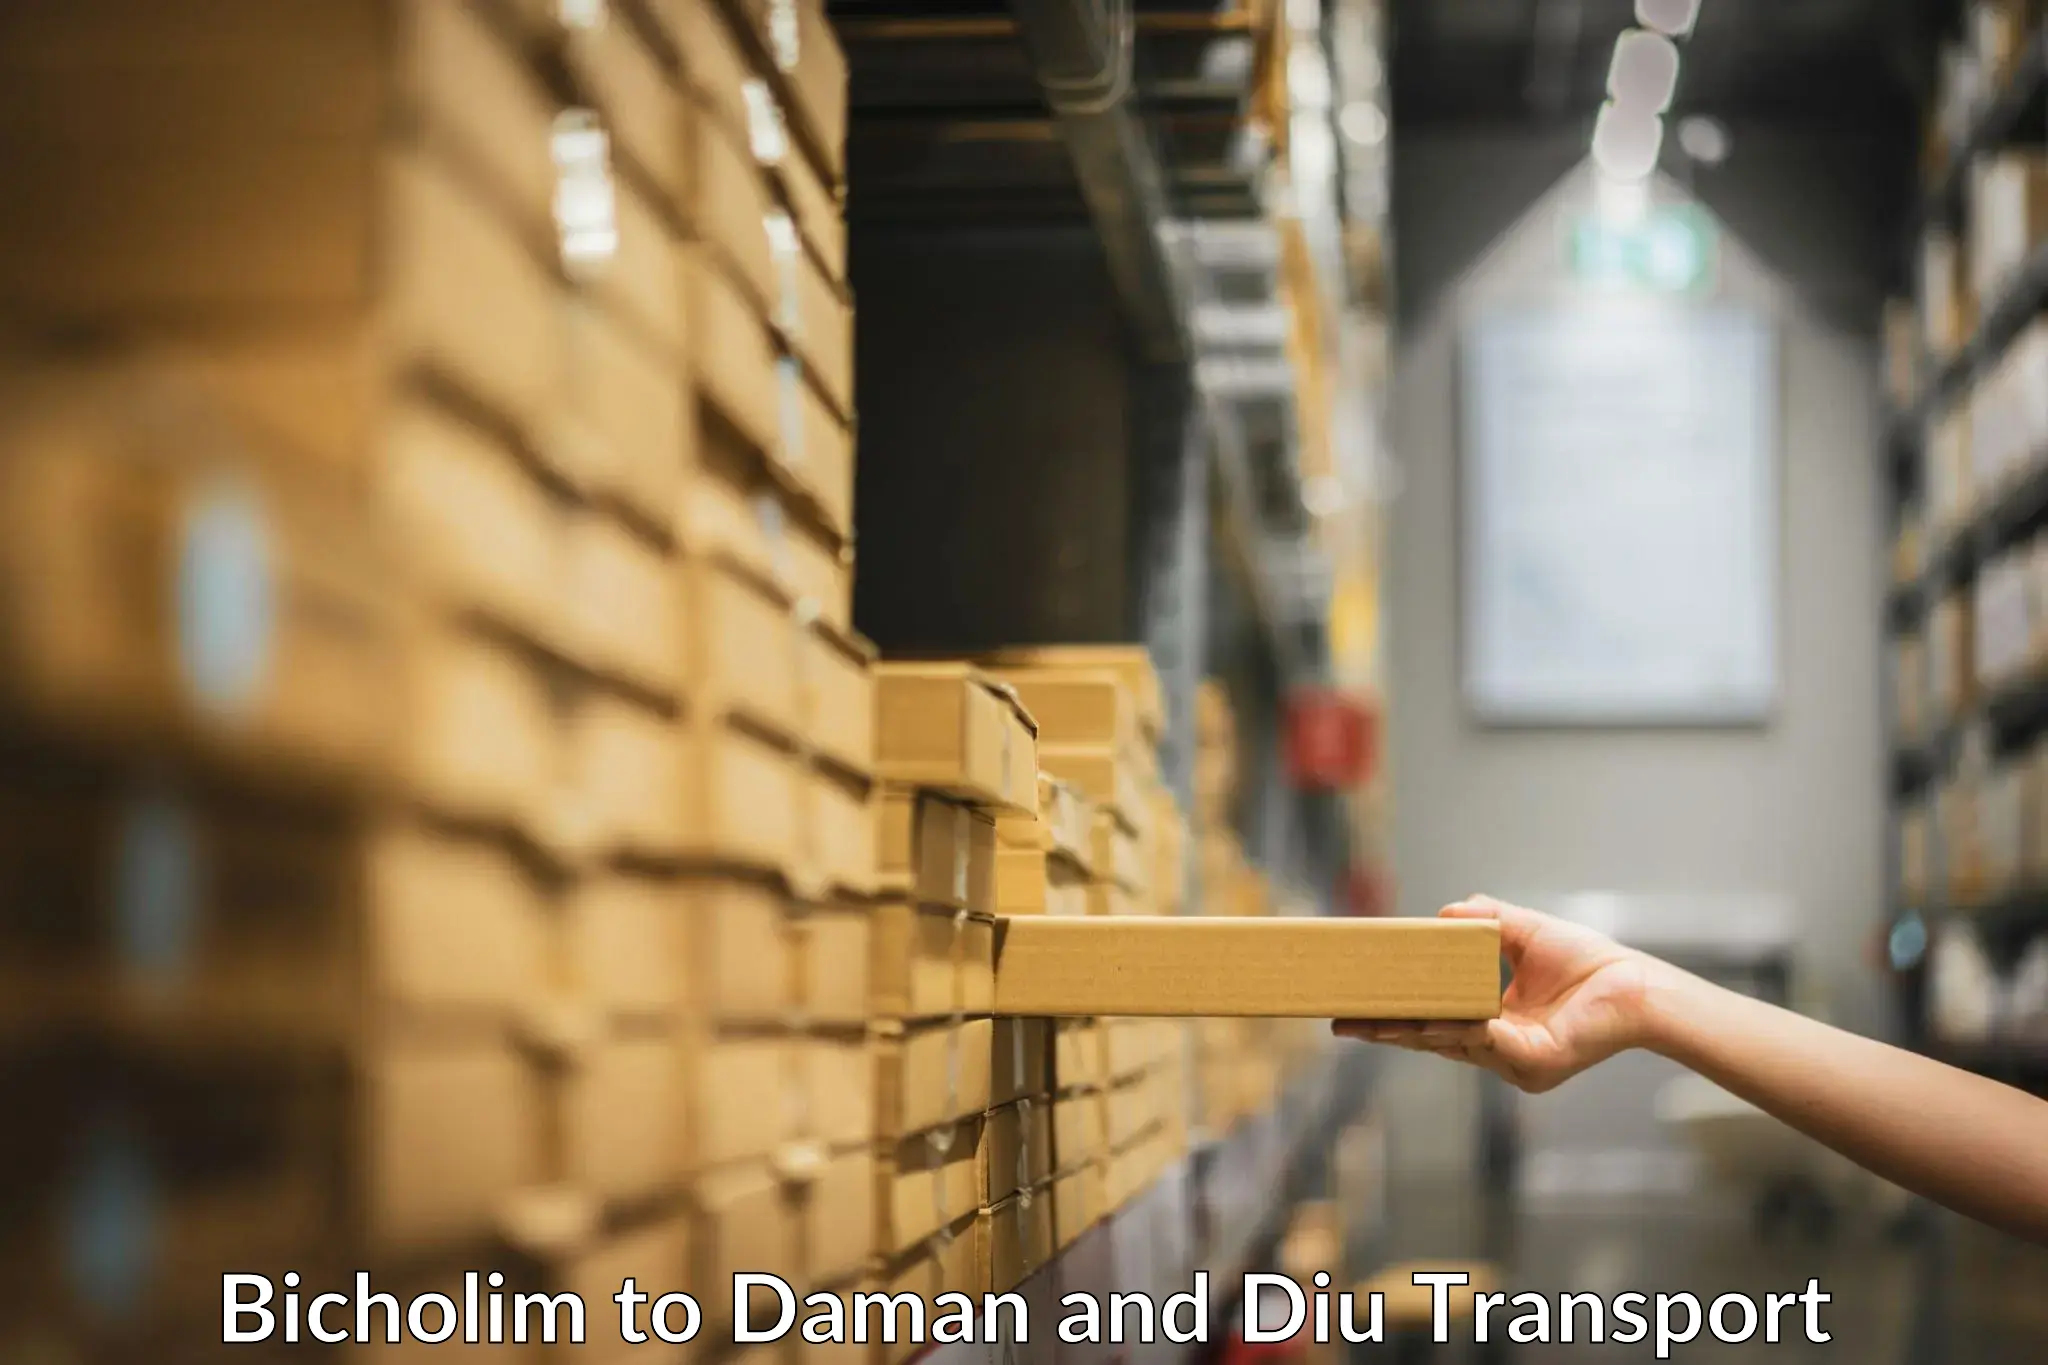 Bike shipping service Bicholim to Daman and Diu